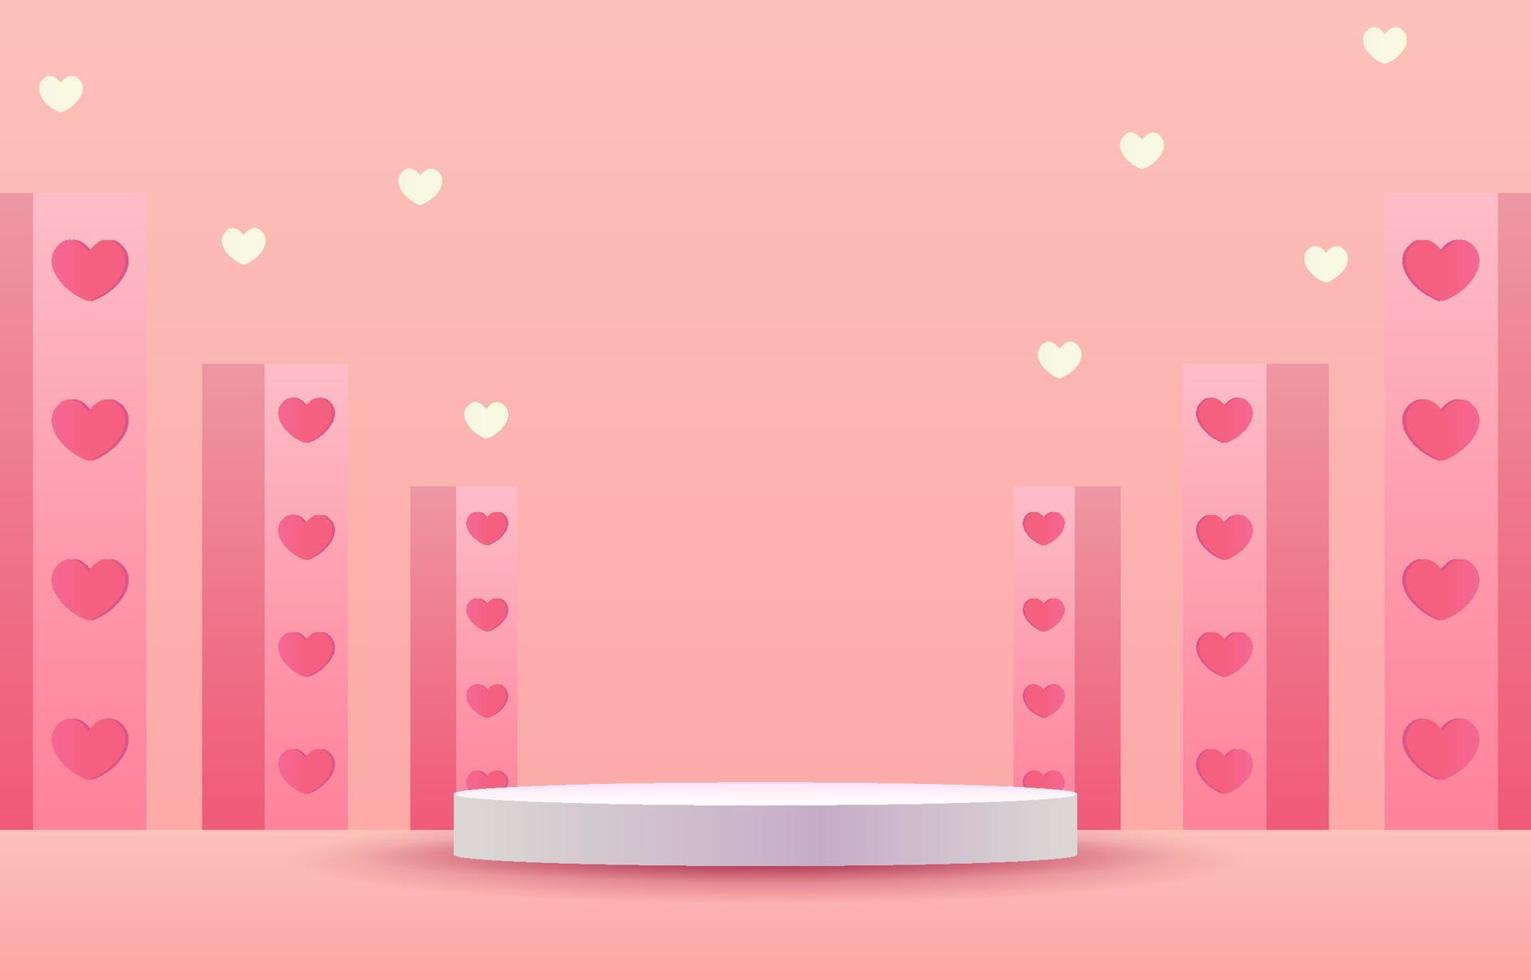 escenario rosa para colocar productos. podio de cilindro vacío. concepto de amor o día de san valentín. fondo rosa dulce decorado con corazones, cajas de regalo y bolsas de compras. diseñado para fondo, pancarta vector